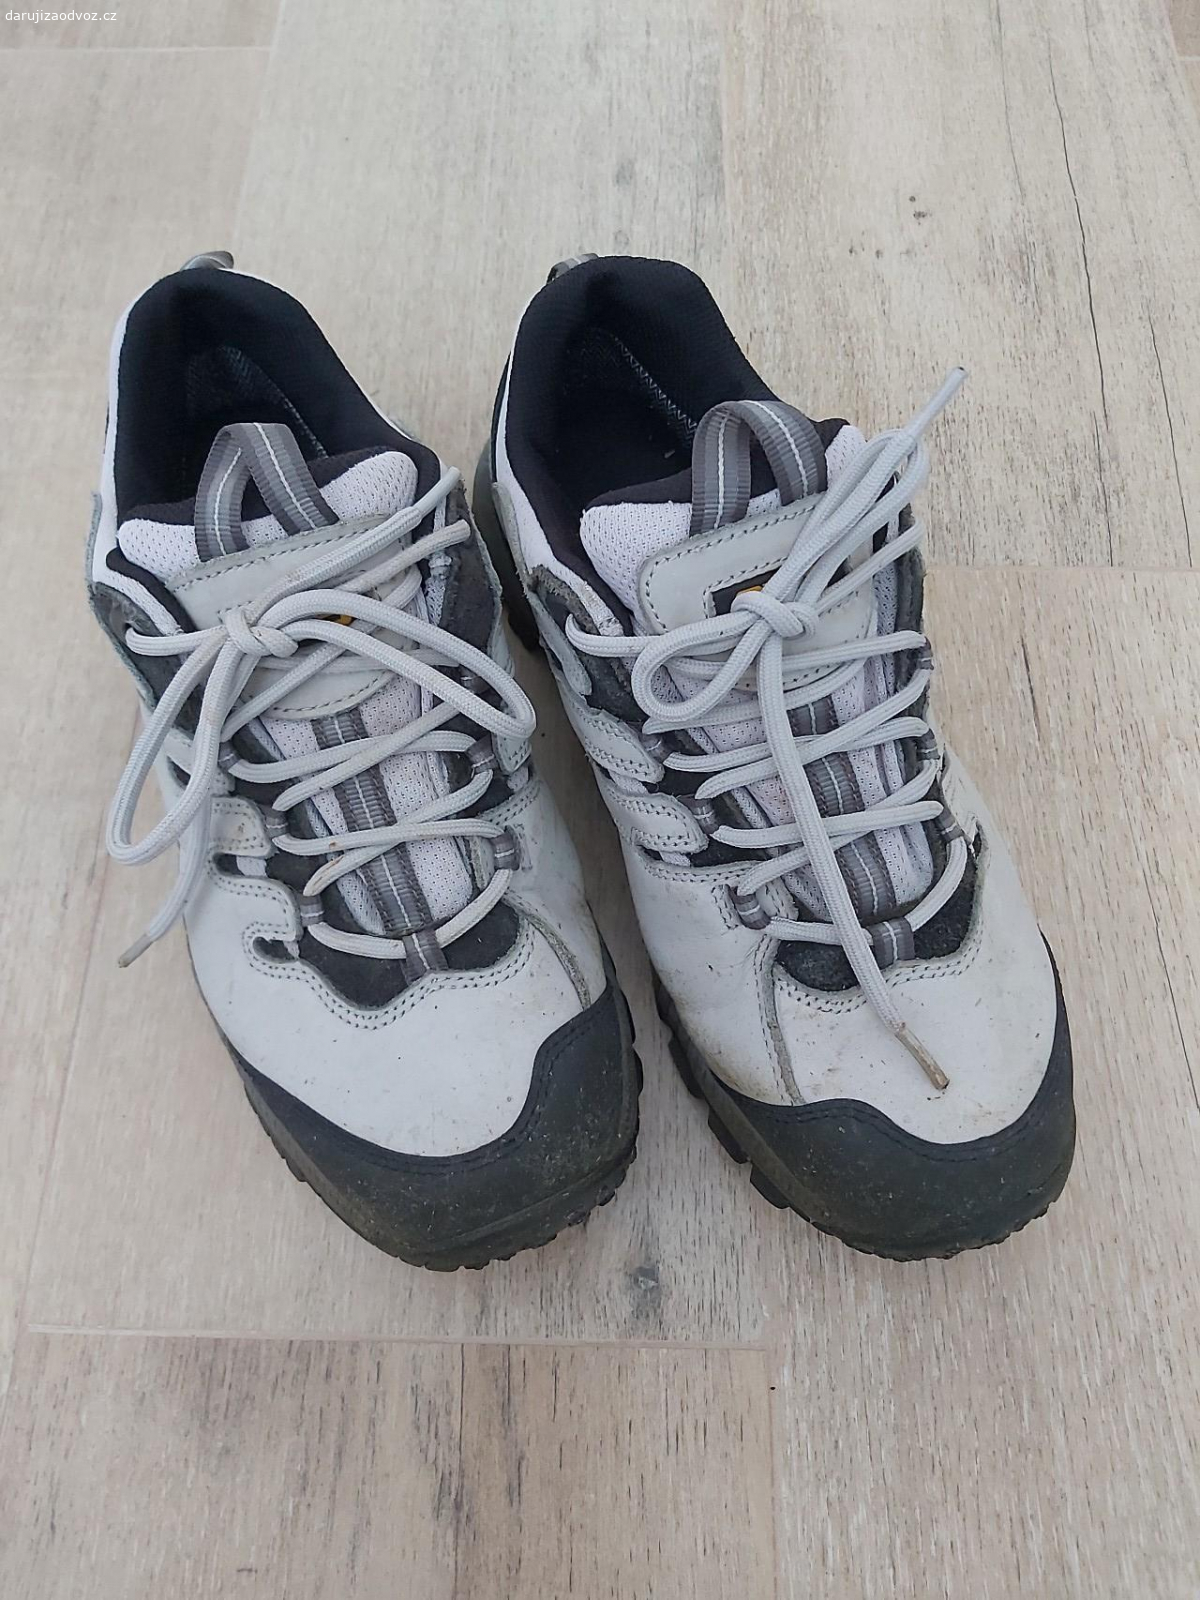 Dámské pracovní boty CXS vel. 41. Daruji dámské pracovní boty CXS, velikost 41. Používané na zahradě, ale stále v dobrém stavu. Idelání na zahradu, na stavbu. Nezasílám. Prosím o kontakt přes email nebo sms.